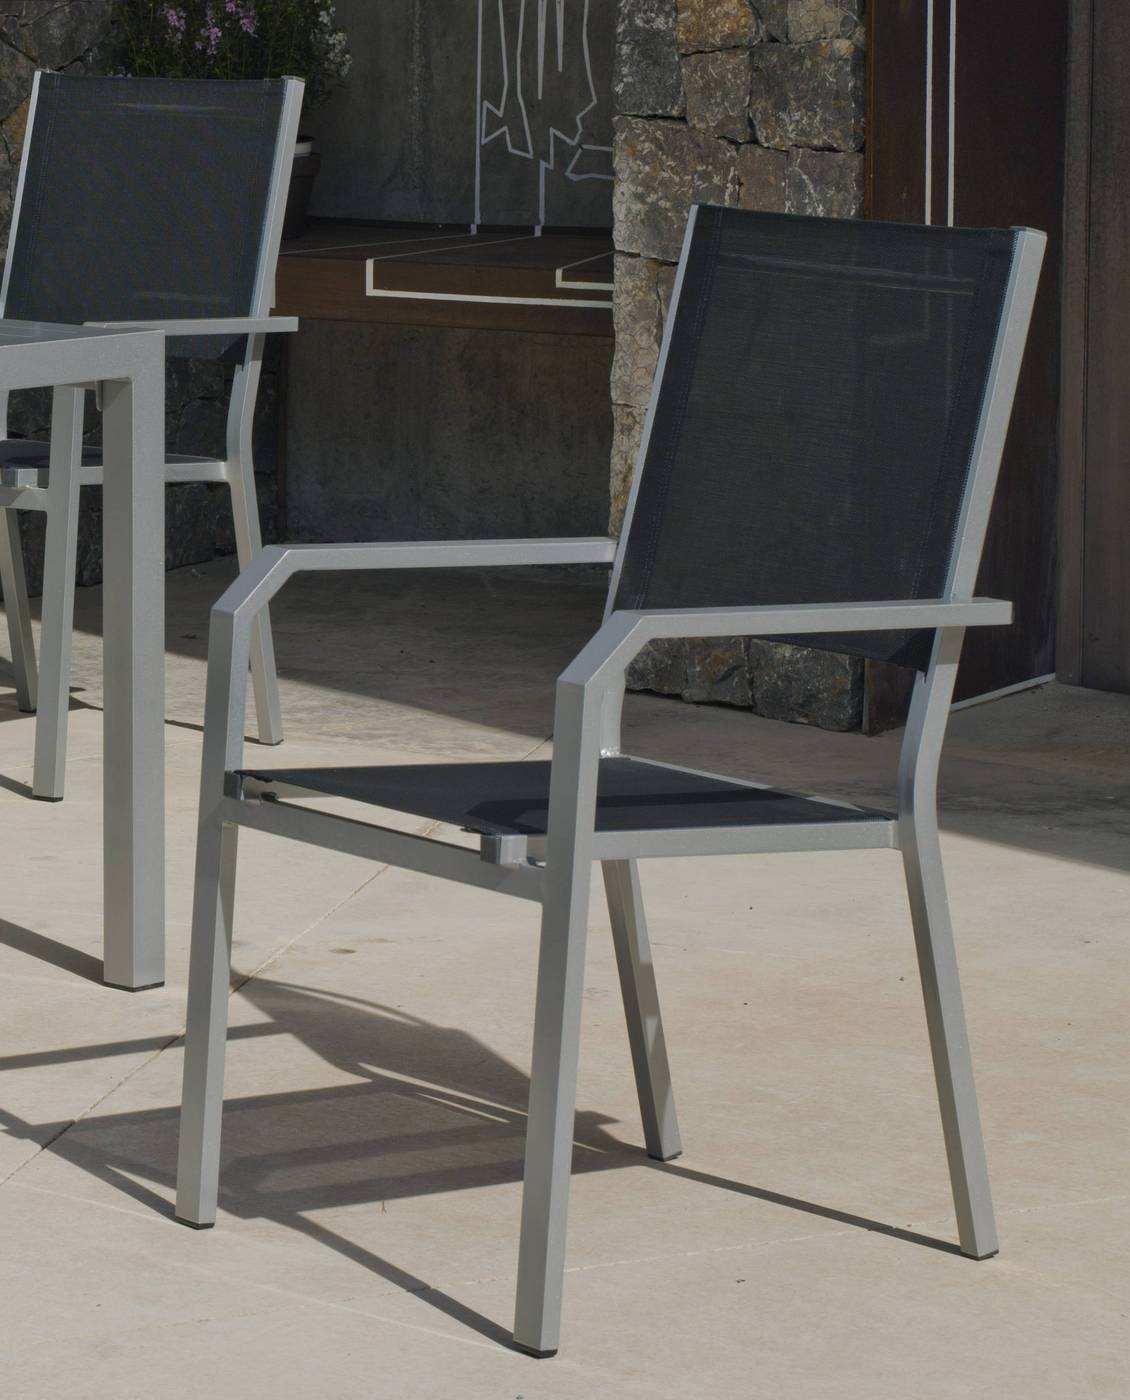 Set Aluminio Palma-Gema 200-8 - Conjunto aluminio luxe: Mesa rectangular 200 cm + 8 sillones de textilen. Disponible en color blanco, antracita, champagne, plata o marrón.